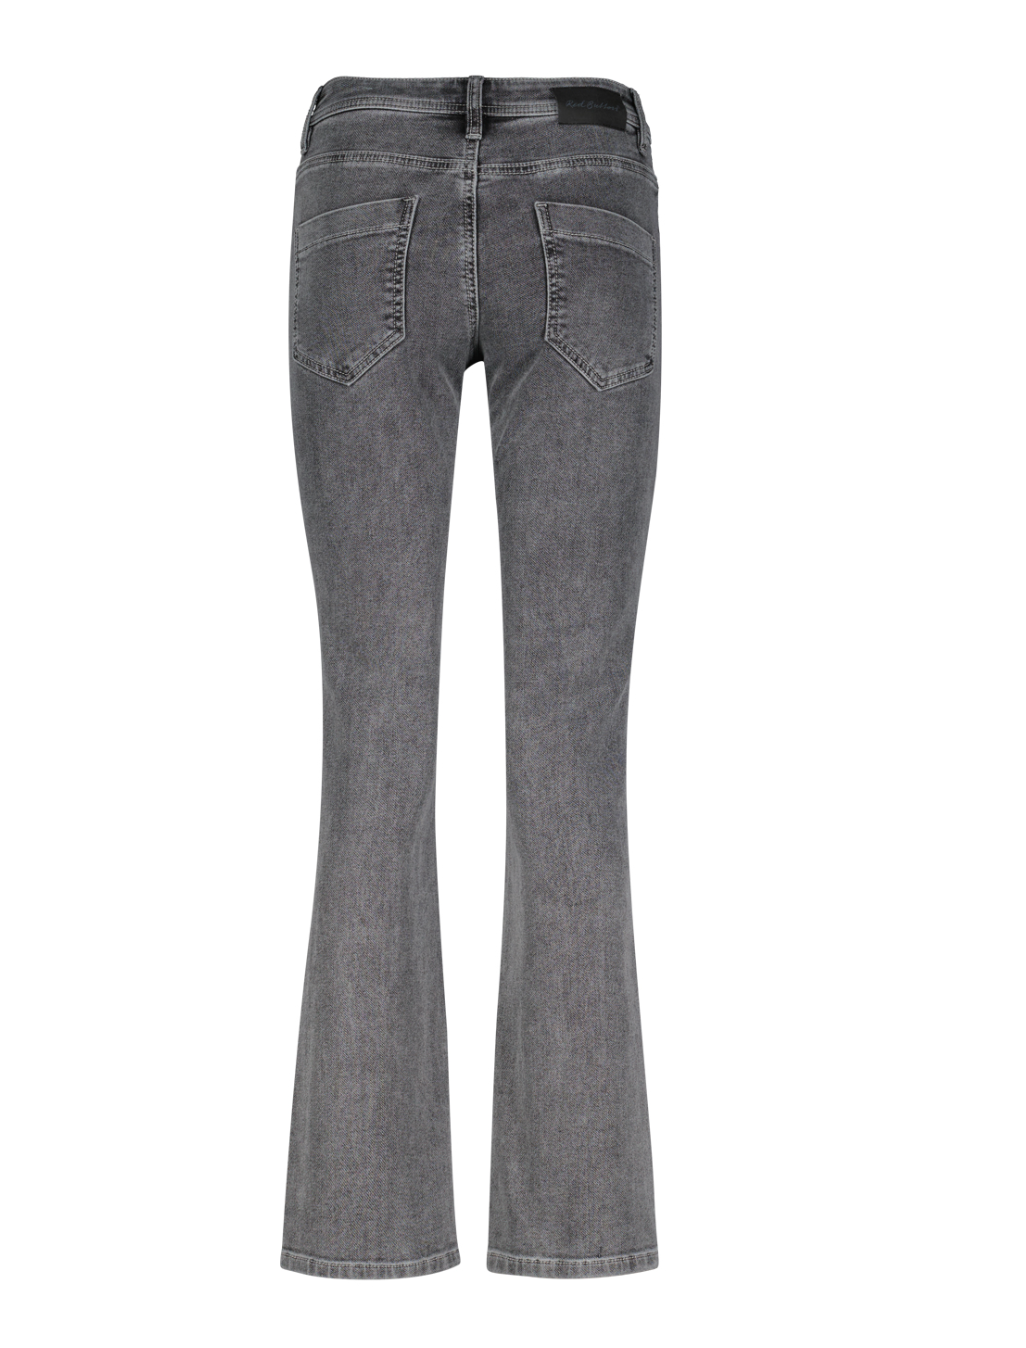 Red Button Babette grey jeans 30" length leg - last ones!